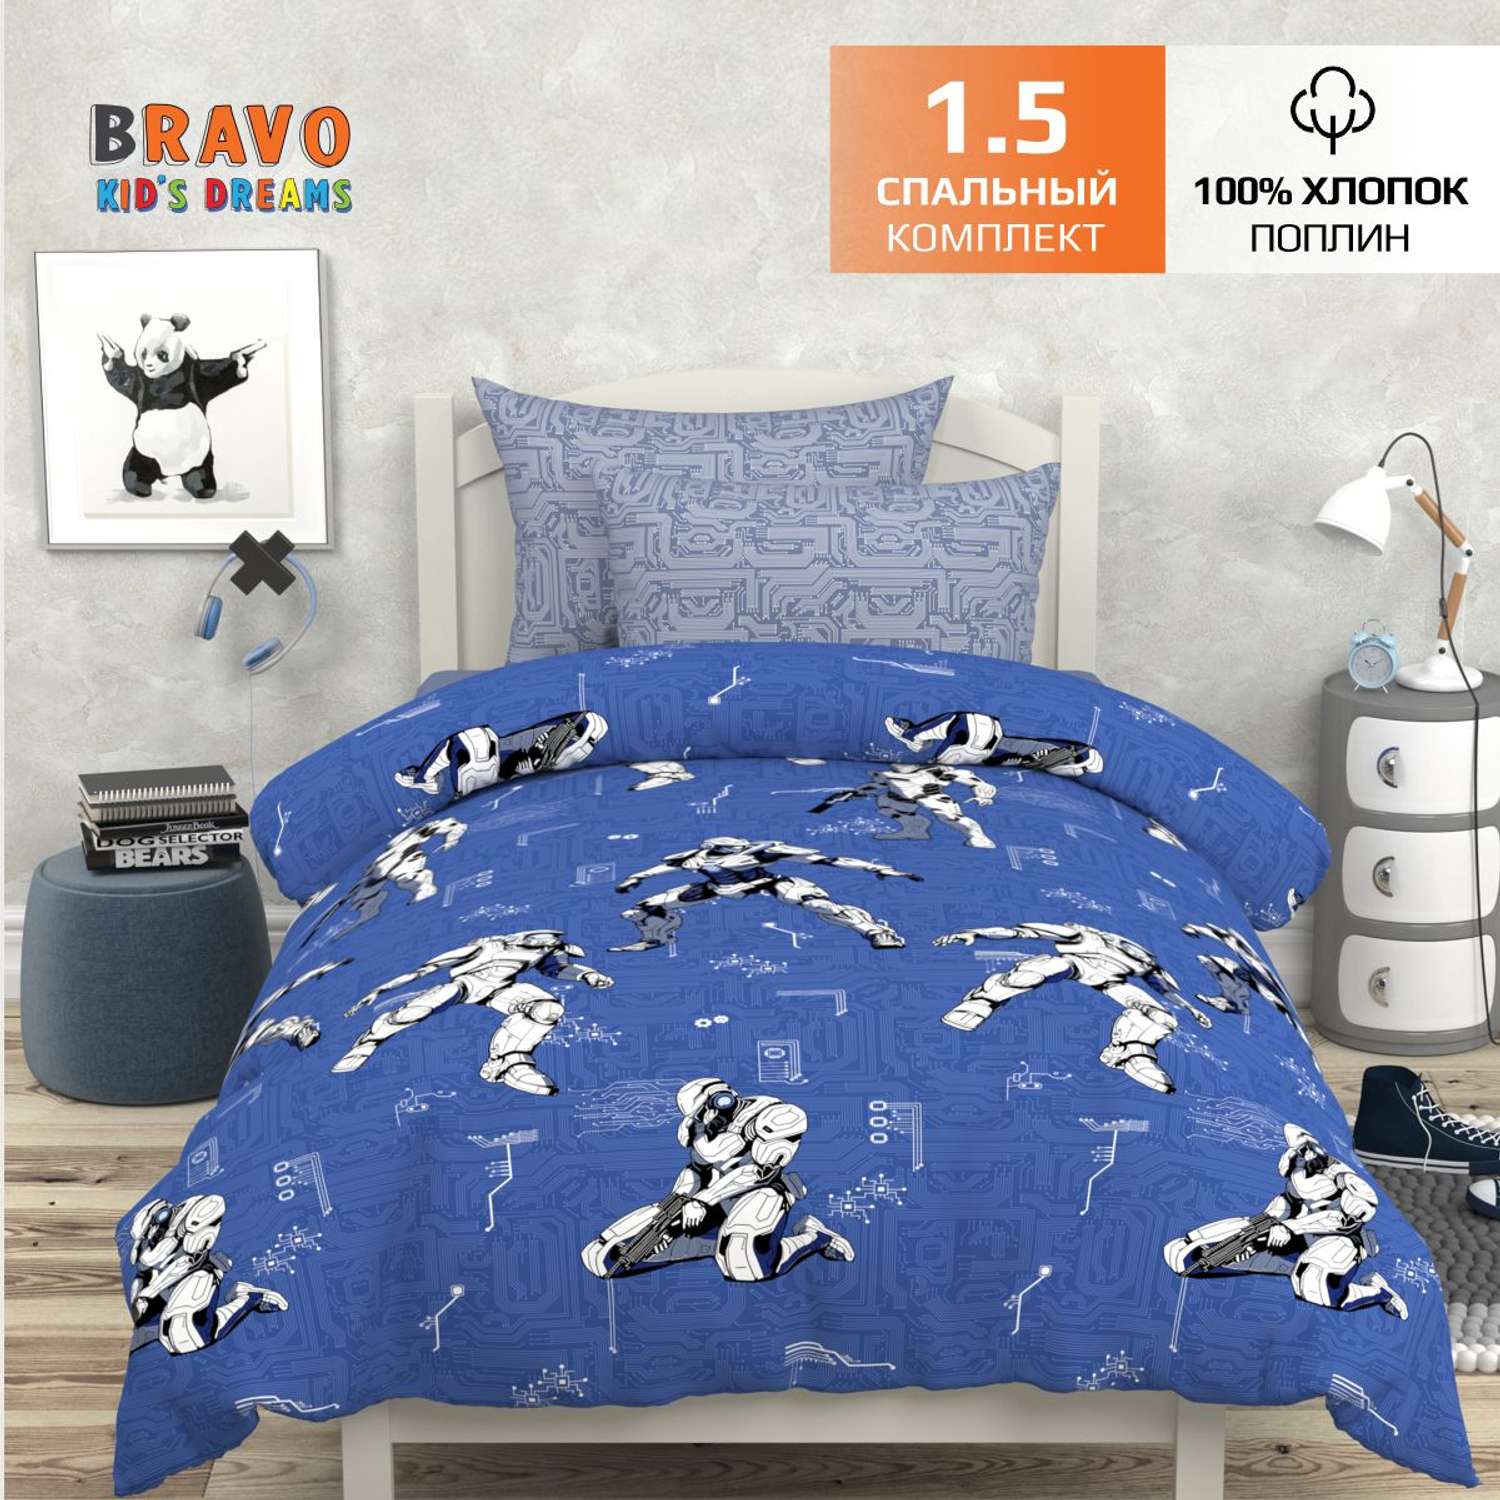 Комплект постельного белья BRAVO kids dreams Роботы 1.5-спальный наволочка 70х70 - фото 2